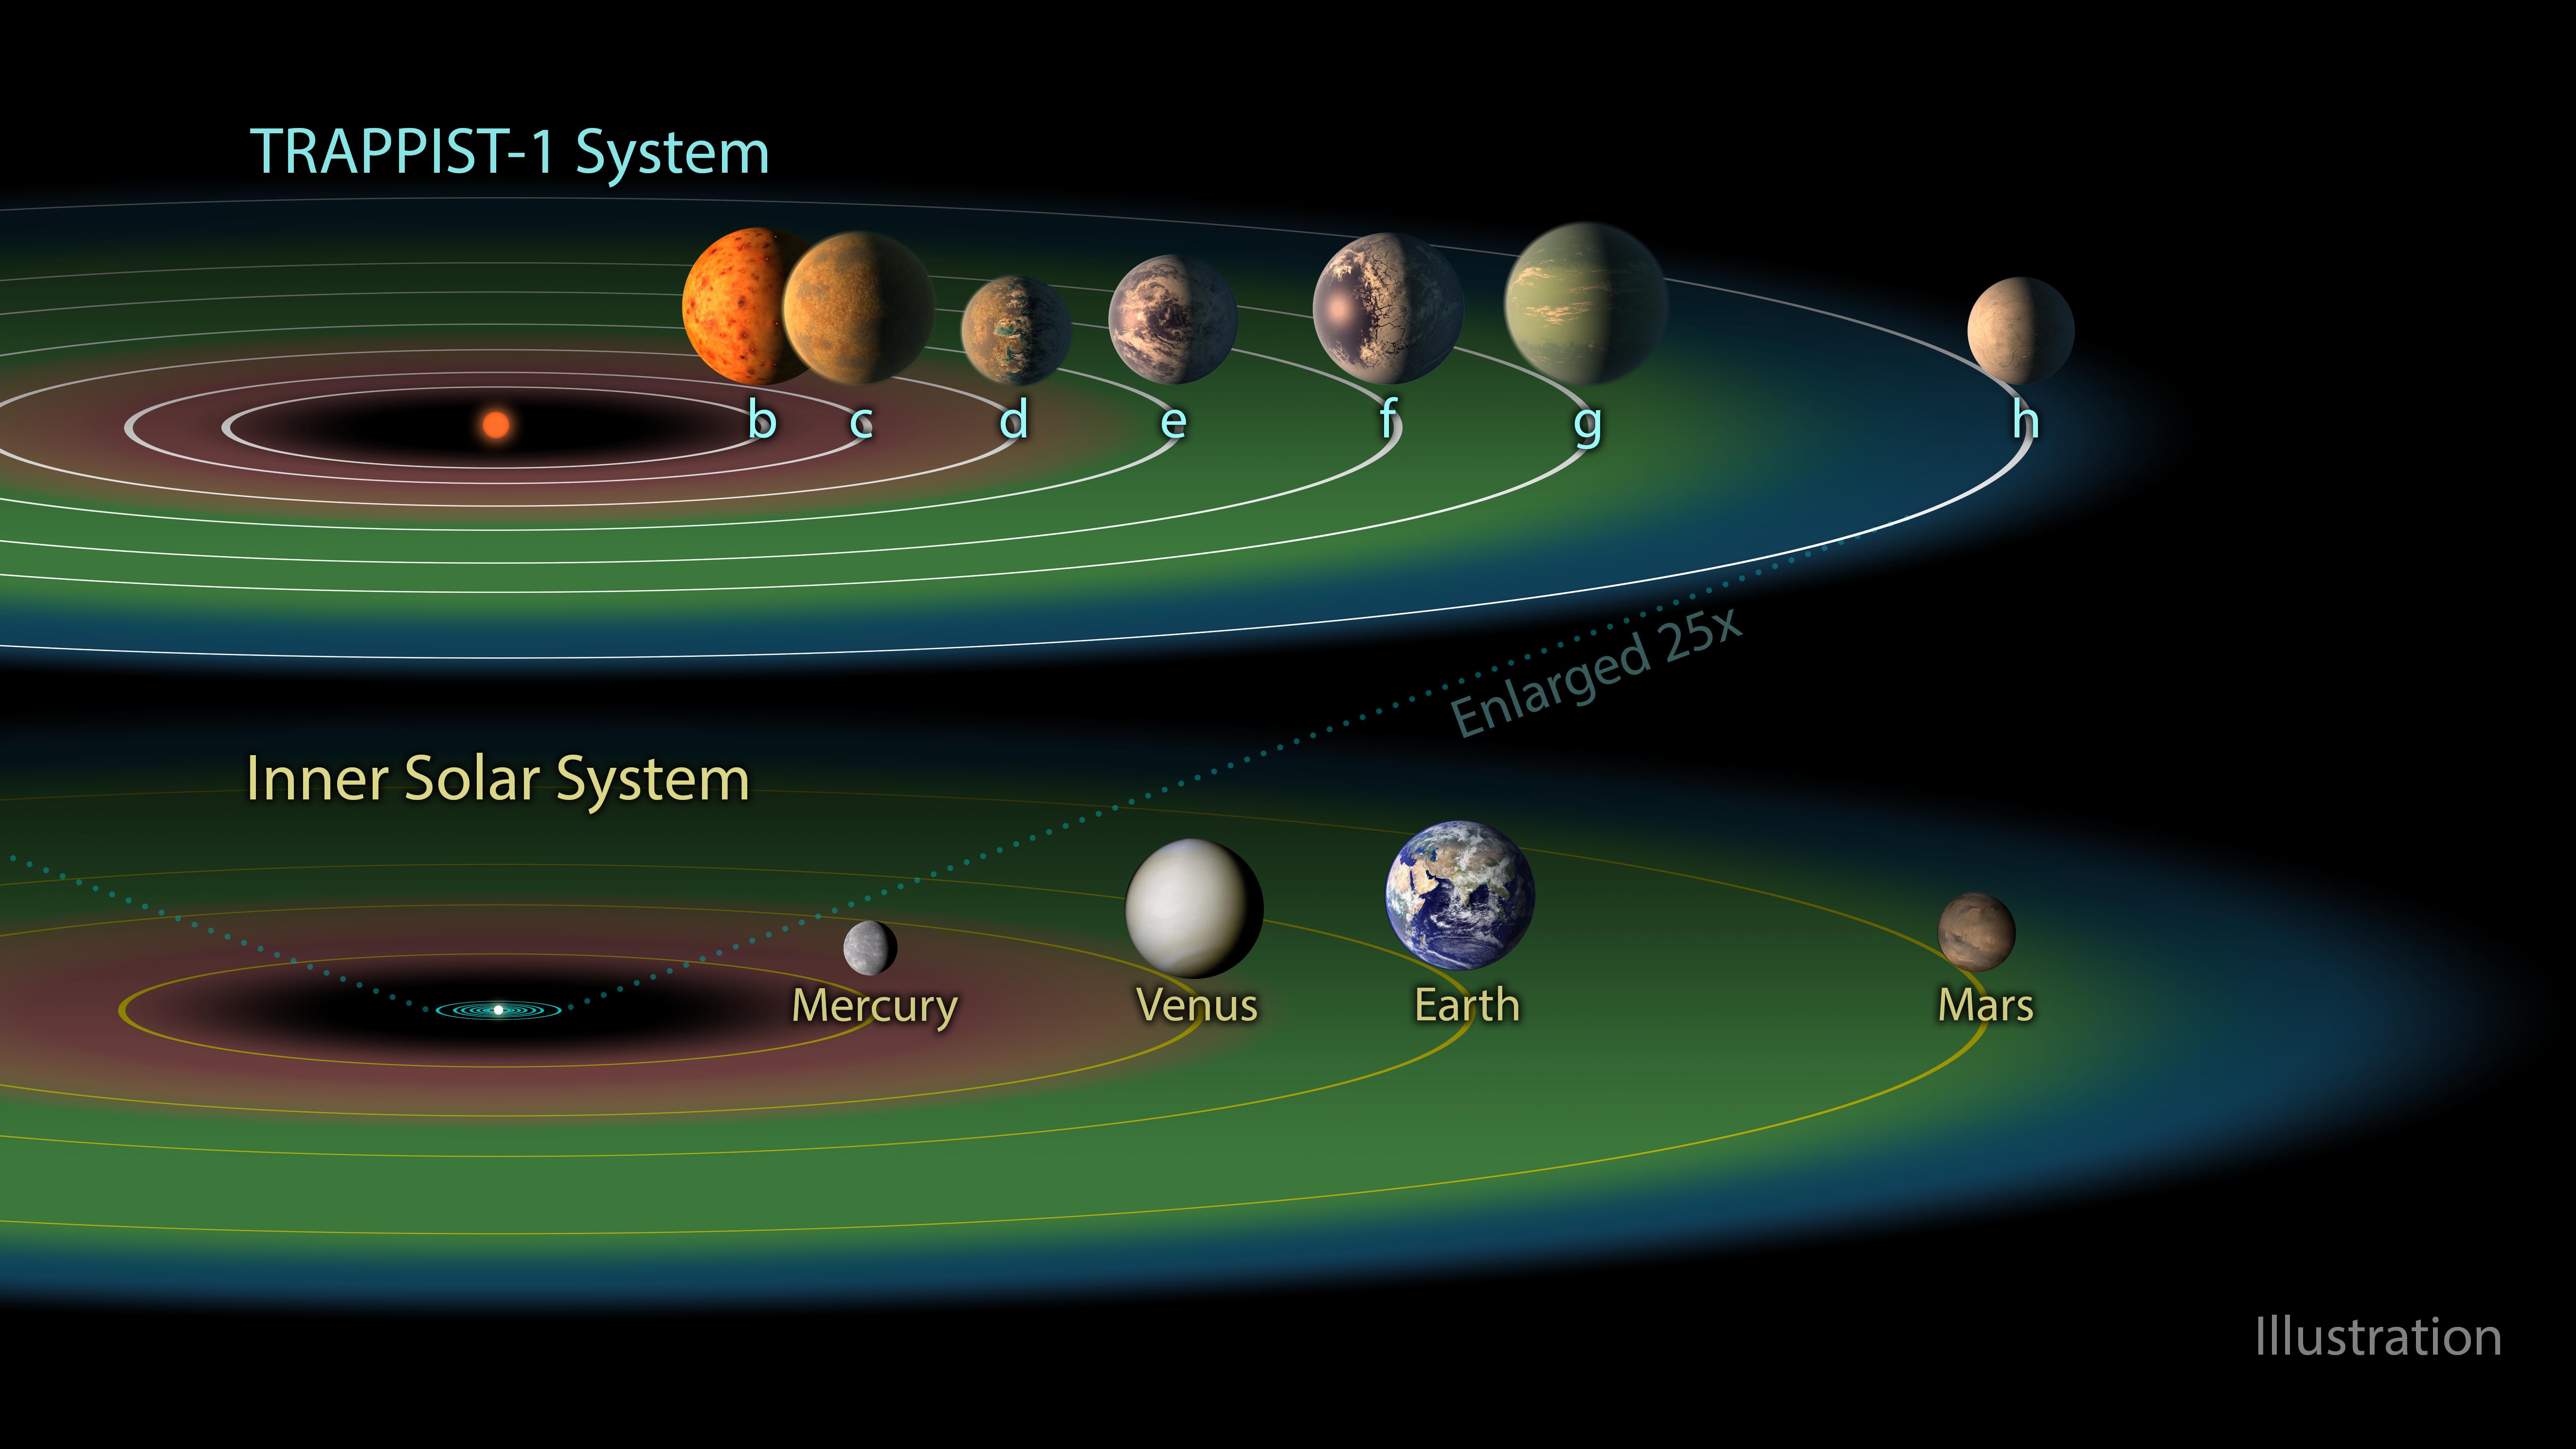 PIA21424: The TRAPPIST-1 Habitable Zone